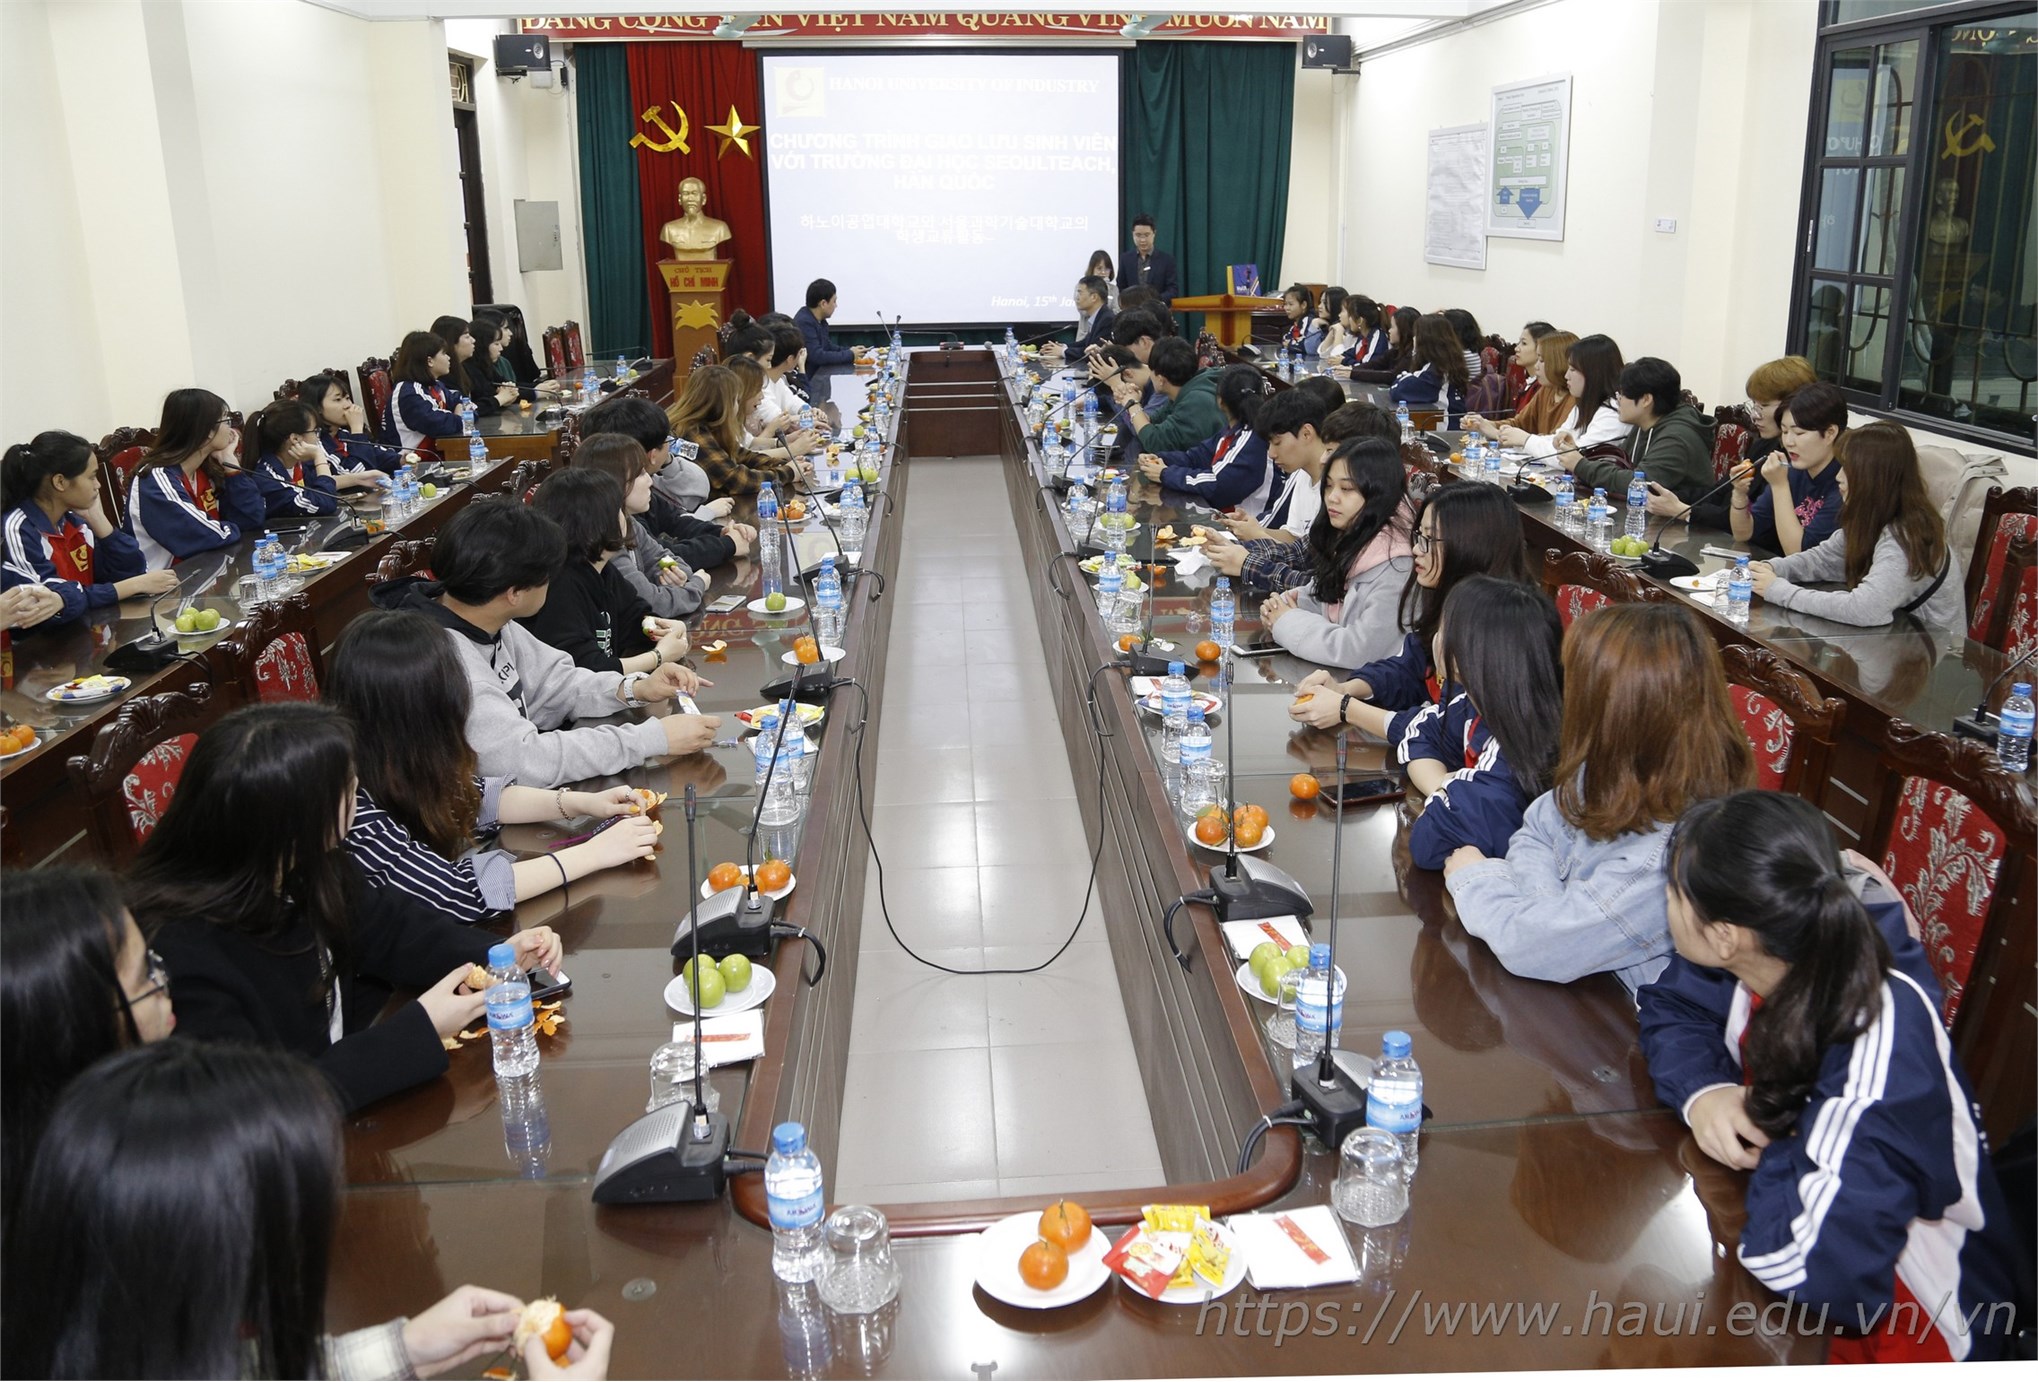 Chương trình giao lưu văn hóa với sinh viên Đại học Khoa học và Công nghệ Quốc gia Seoul - Hàn Quốc